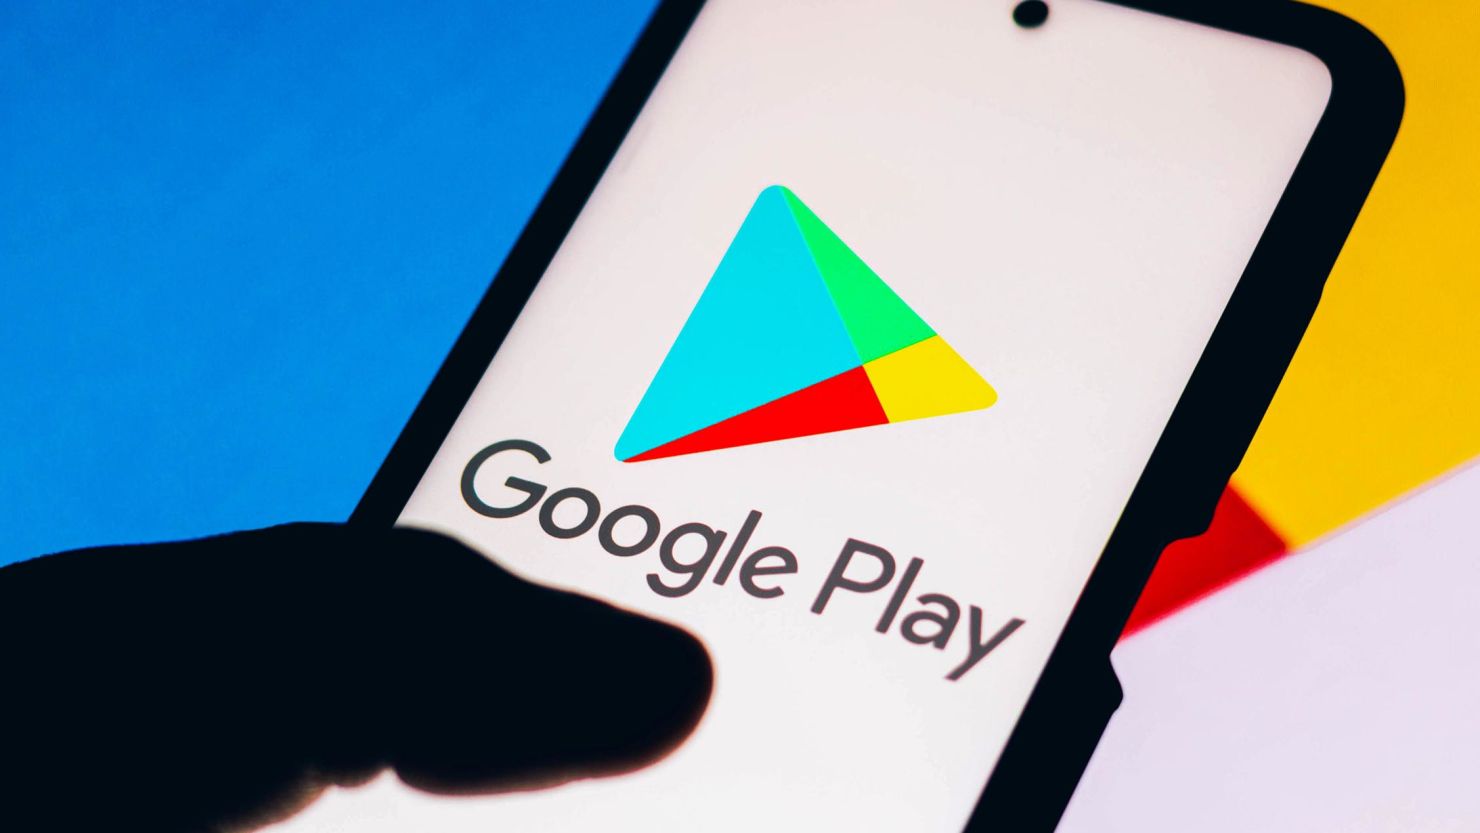 Google Play introducerar ny funktion för att identifiera officiella myndighetsappar